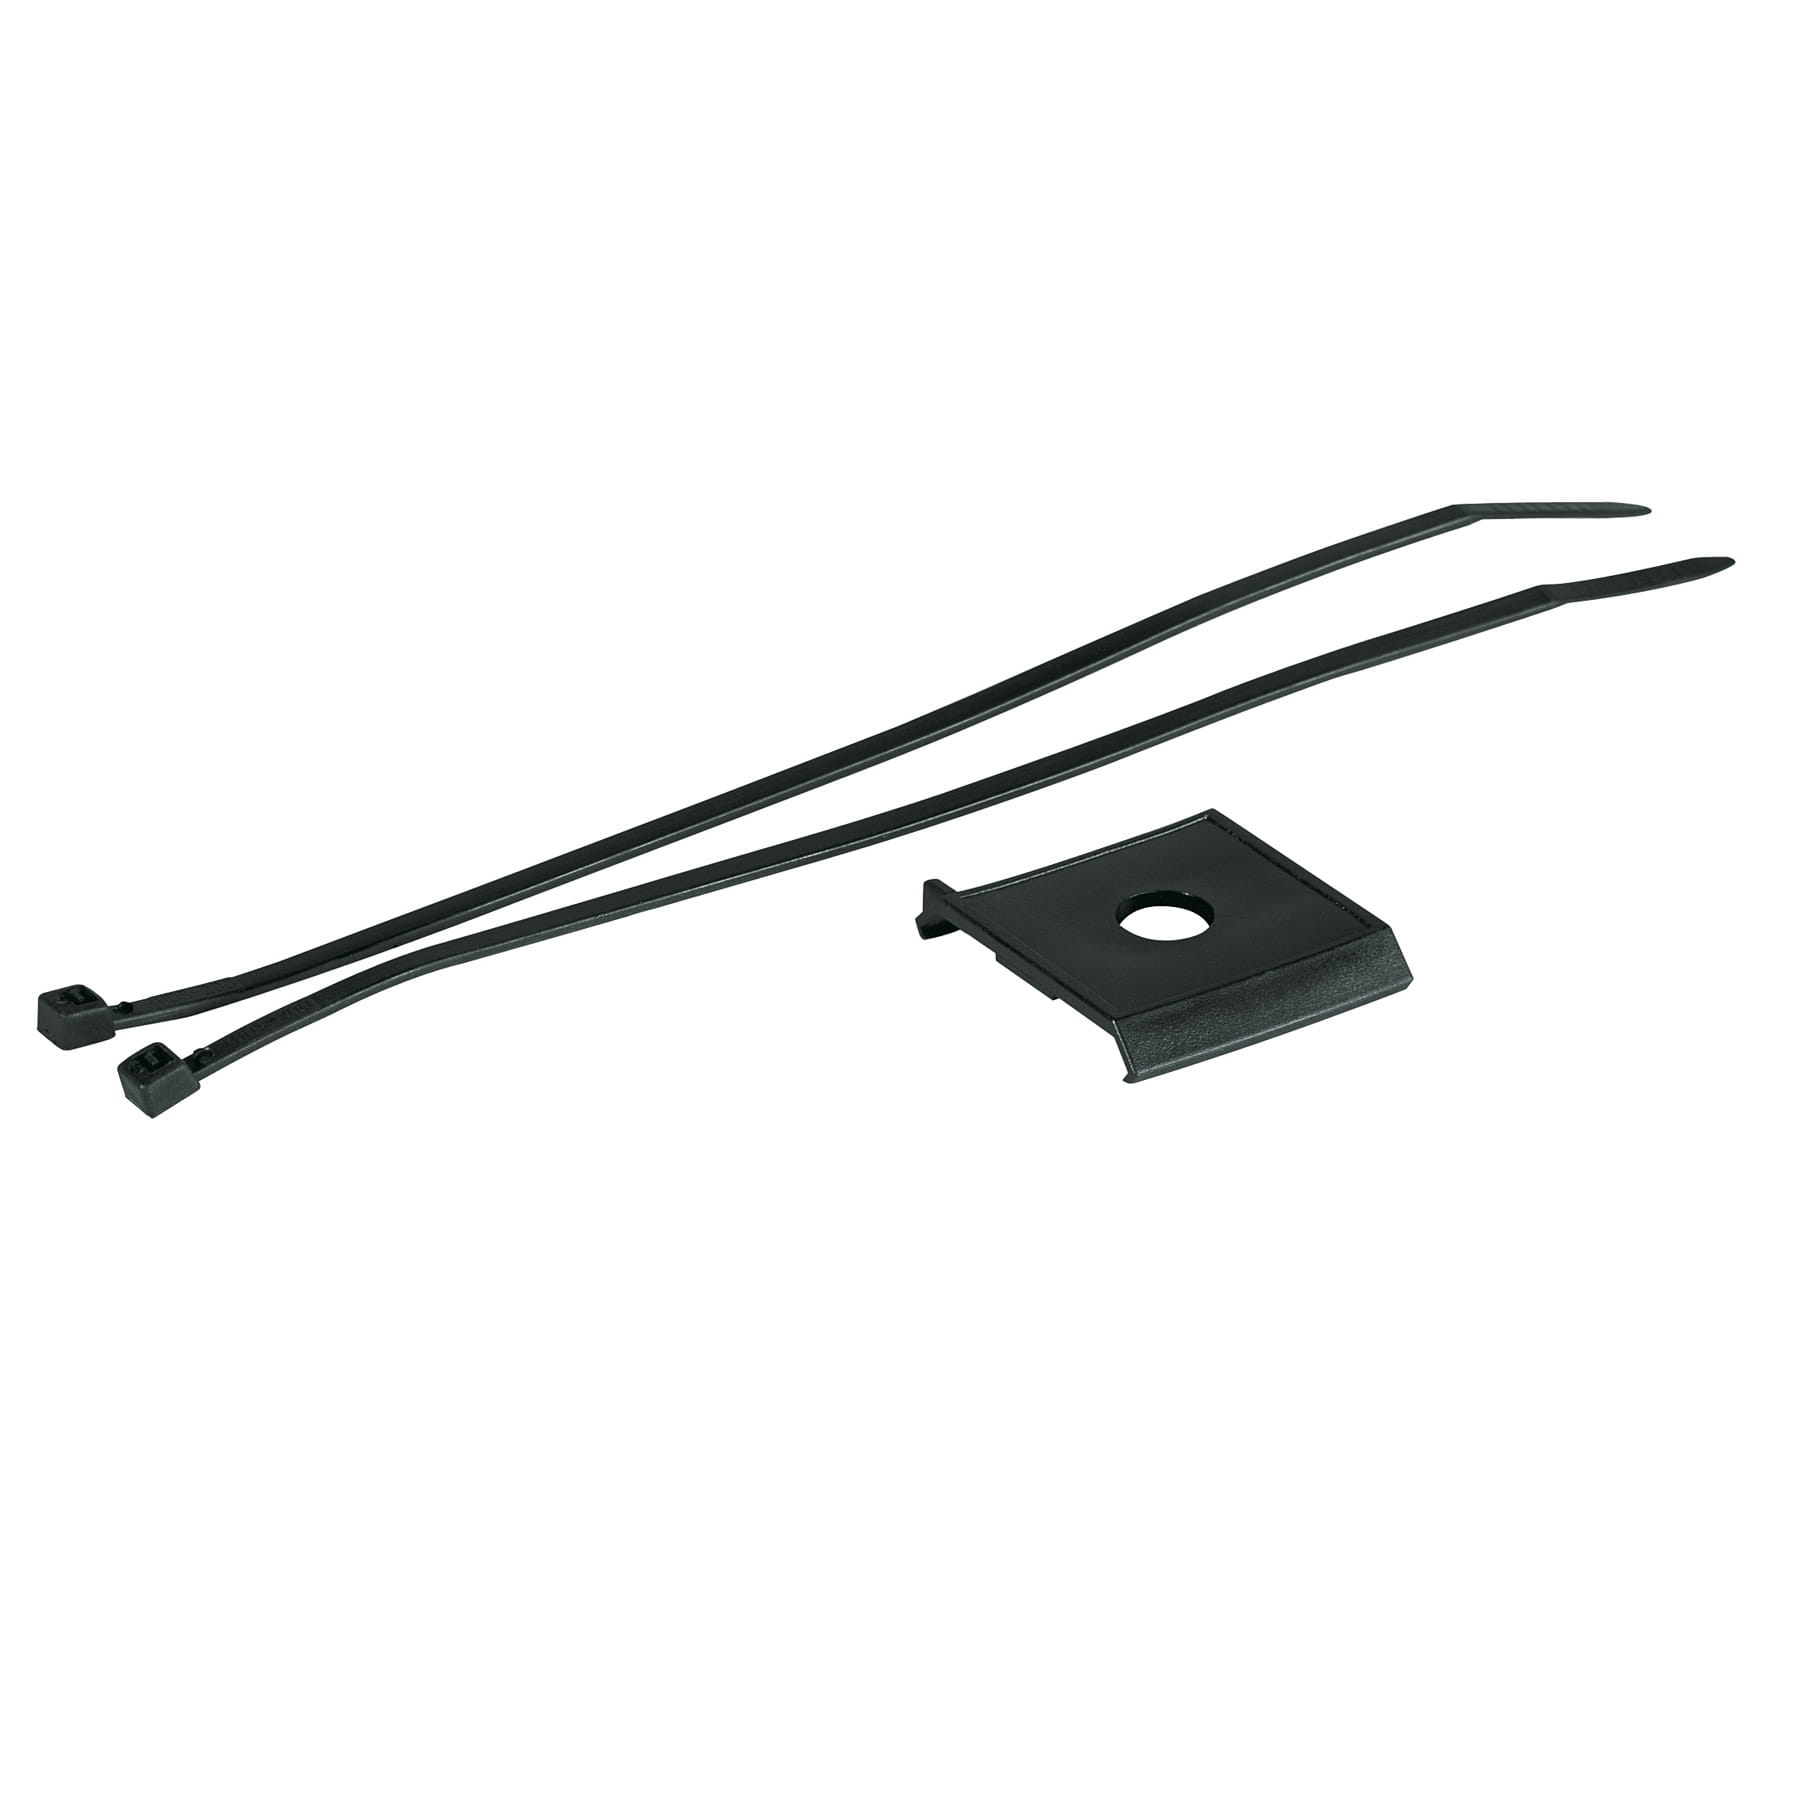 SKS Cannondale Head-Shock-Adapter 10178 for Shockboard / Shockblade / Dashboard